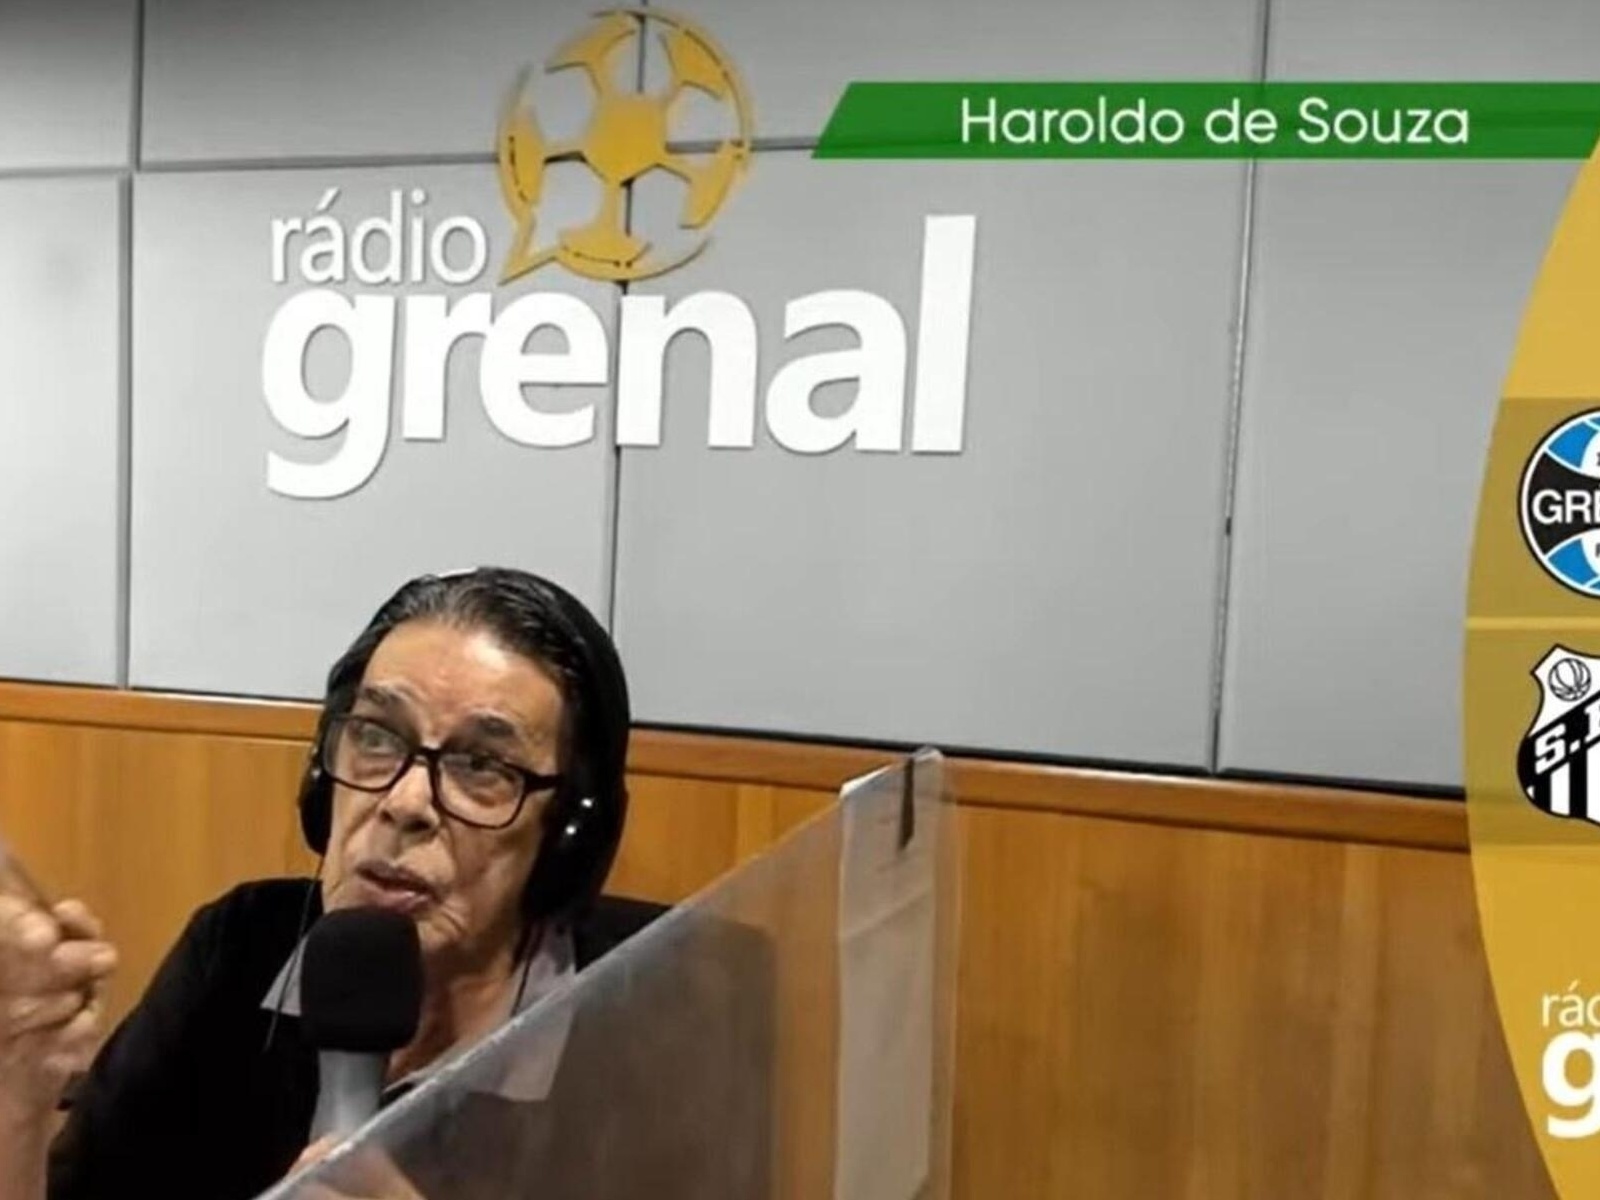 Jornalista da Rádio Grenal sofre crime de racismo durante atração